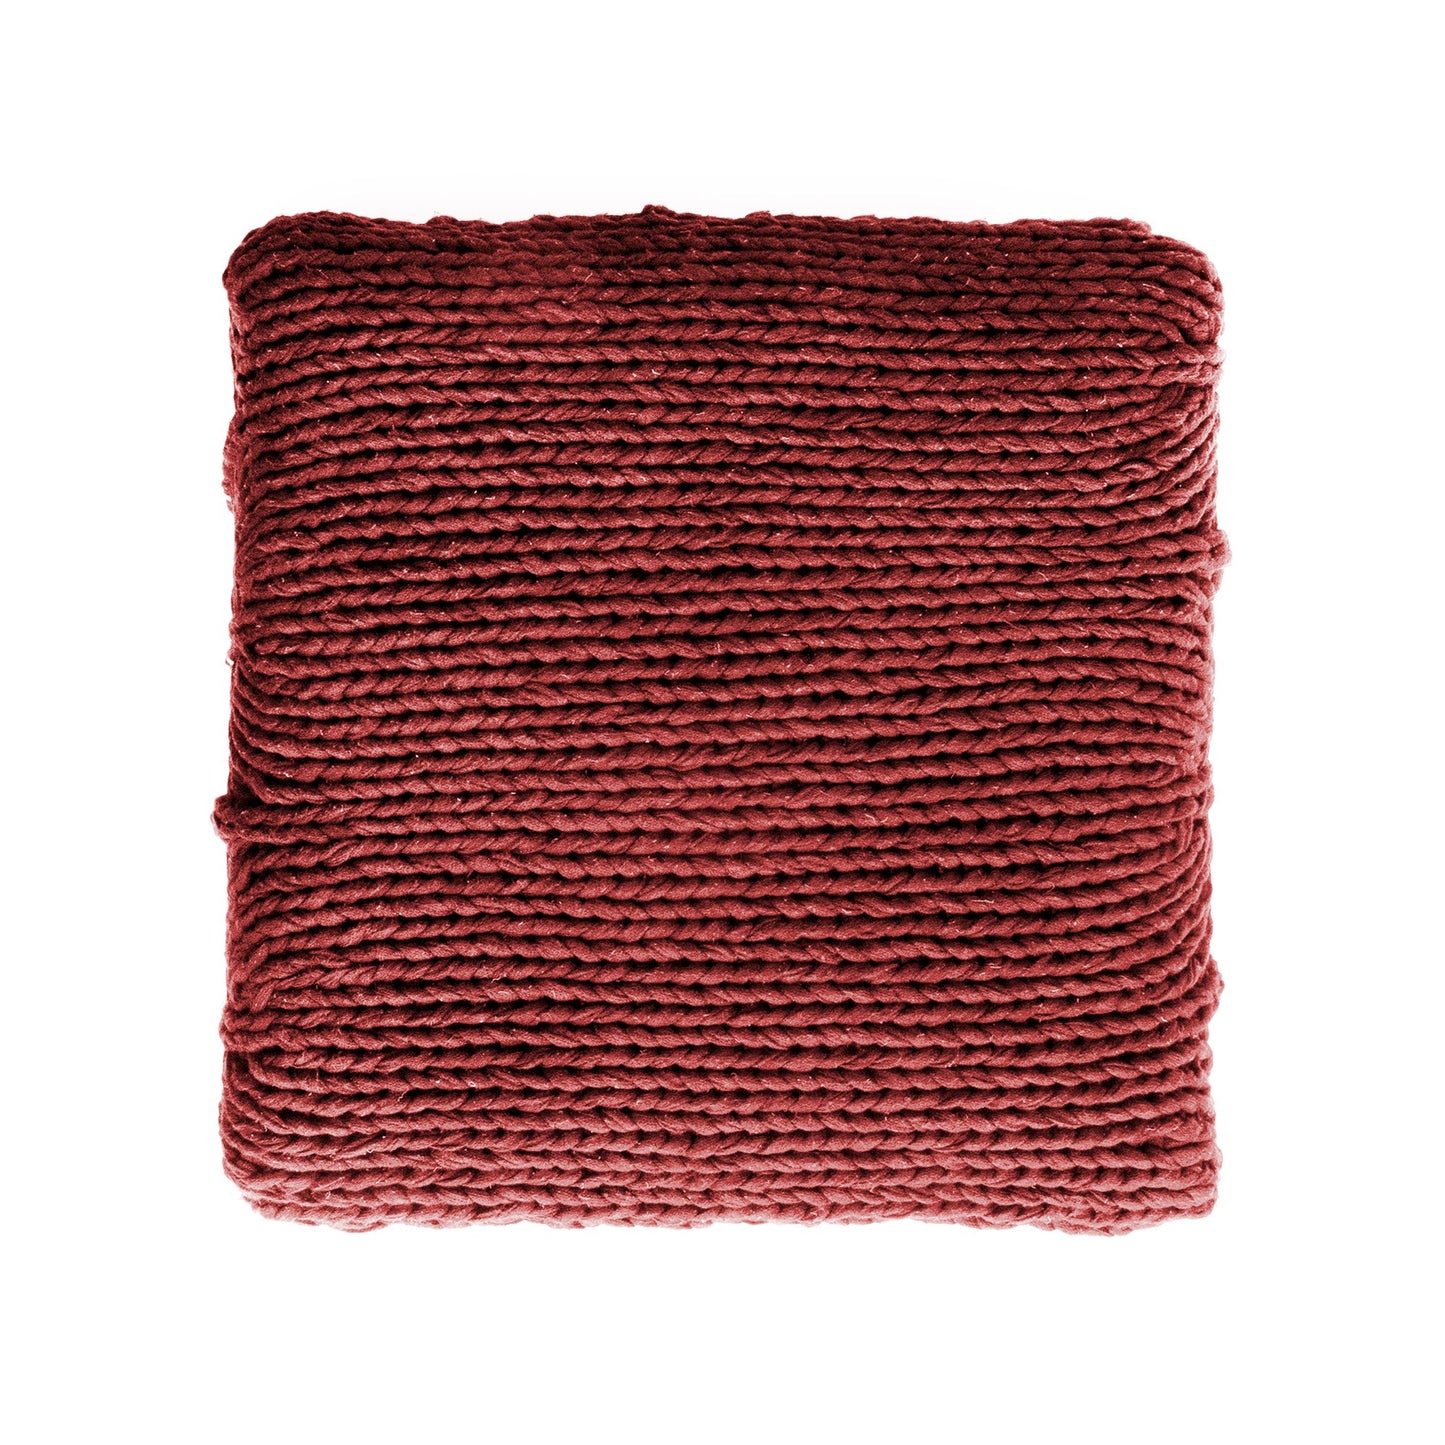  Puff Zig Zag, em tricô artesanal, Vermelho/Cru, com fio 100% algodão. Dimensões: Altura - 40cm; Largura - 45cm; Comprimento - 45cm. 